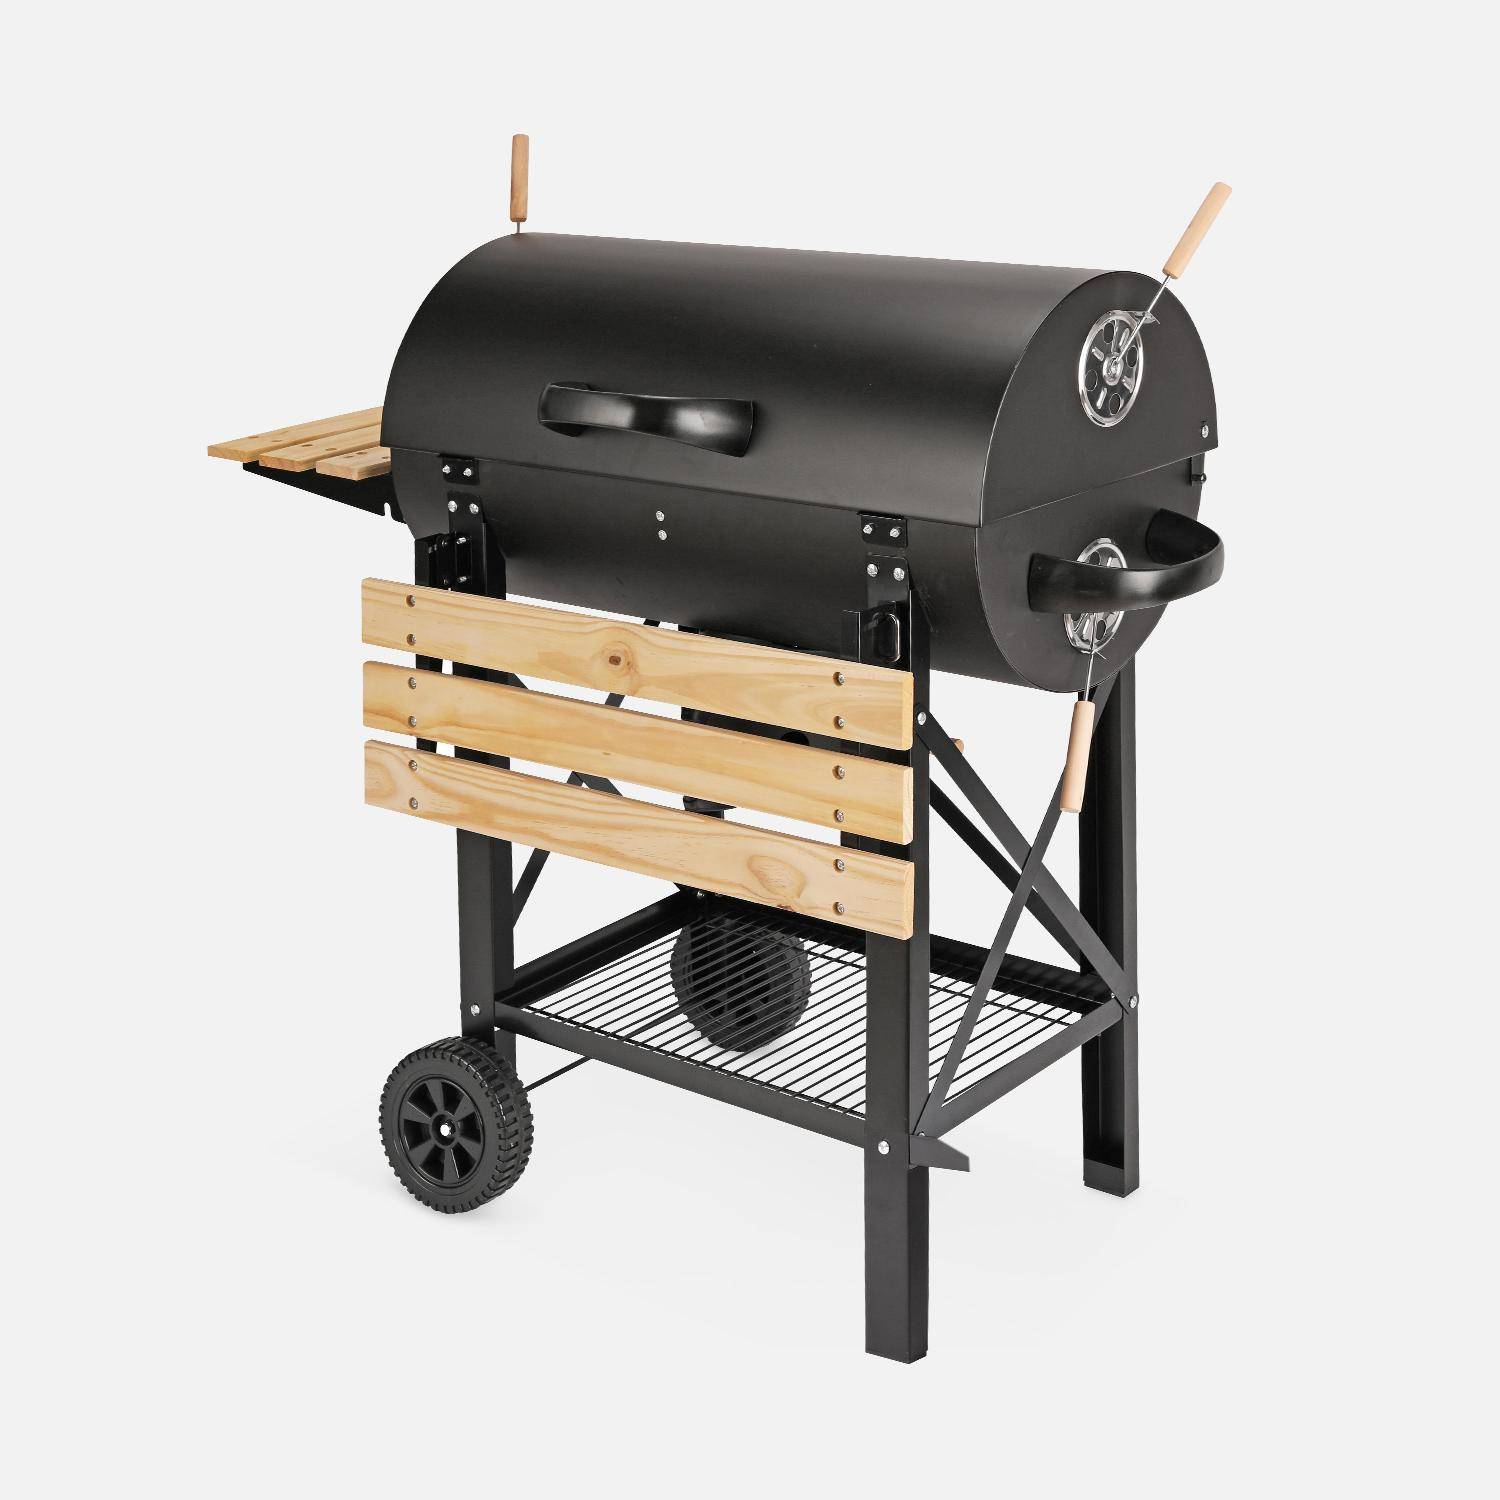 Barbecue americano a carbonella - Serge nero - Affumicatore americano con aeratori, raccogli cenere, fumatore Photo2